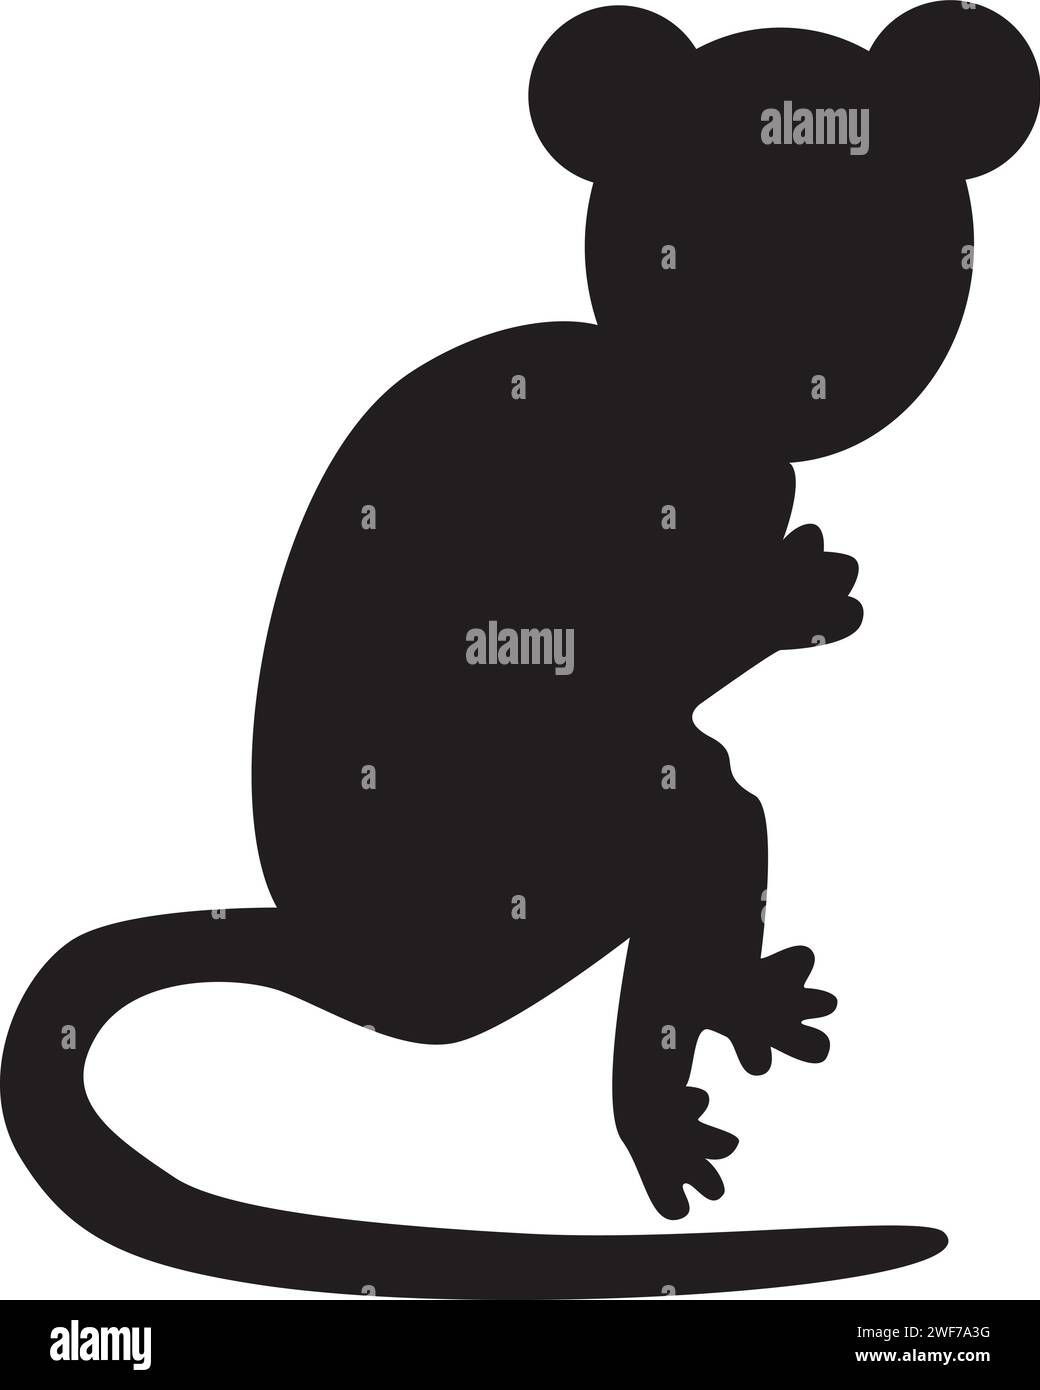 Schwarze Silhouette, kleiner Maus-Tierkörper, märchenhafter Halloween-Charakter. Gruselige Schattenumrisse der nächtlichen Mäusescheuche. Einfaches Schwarzweiß Stock Vektor